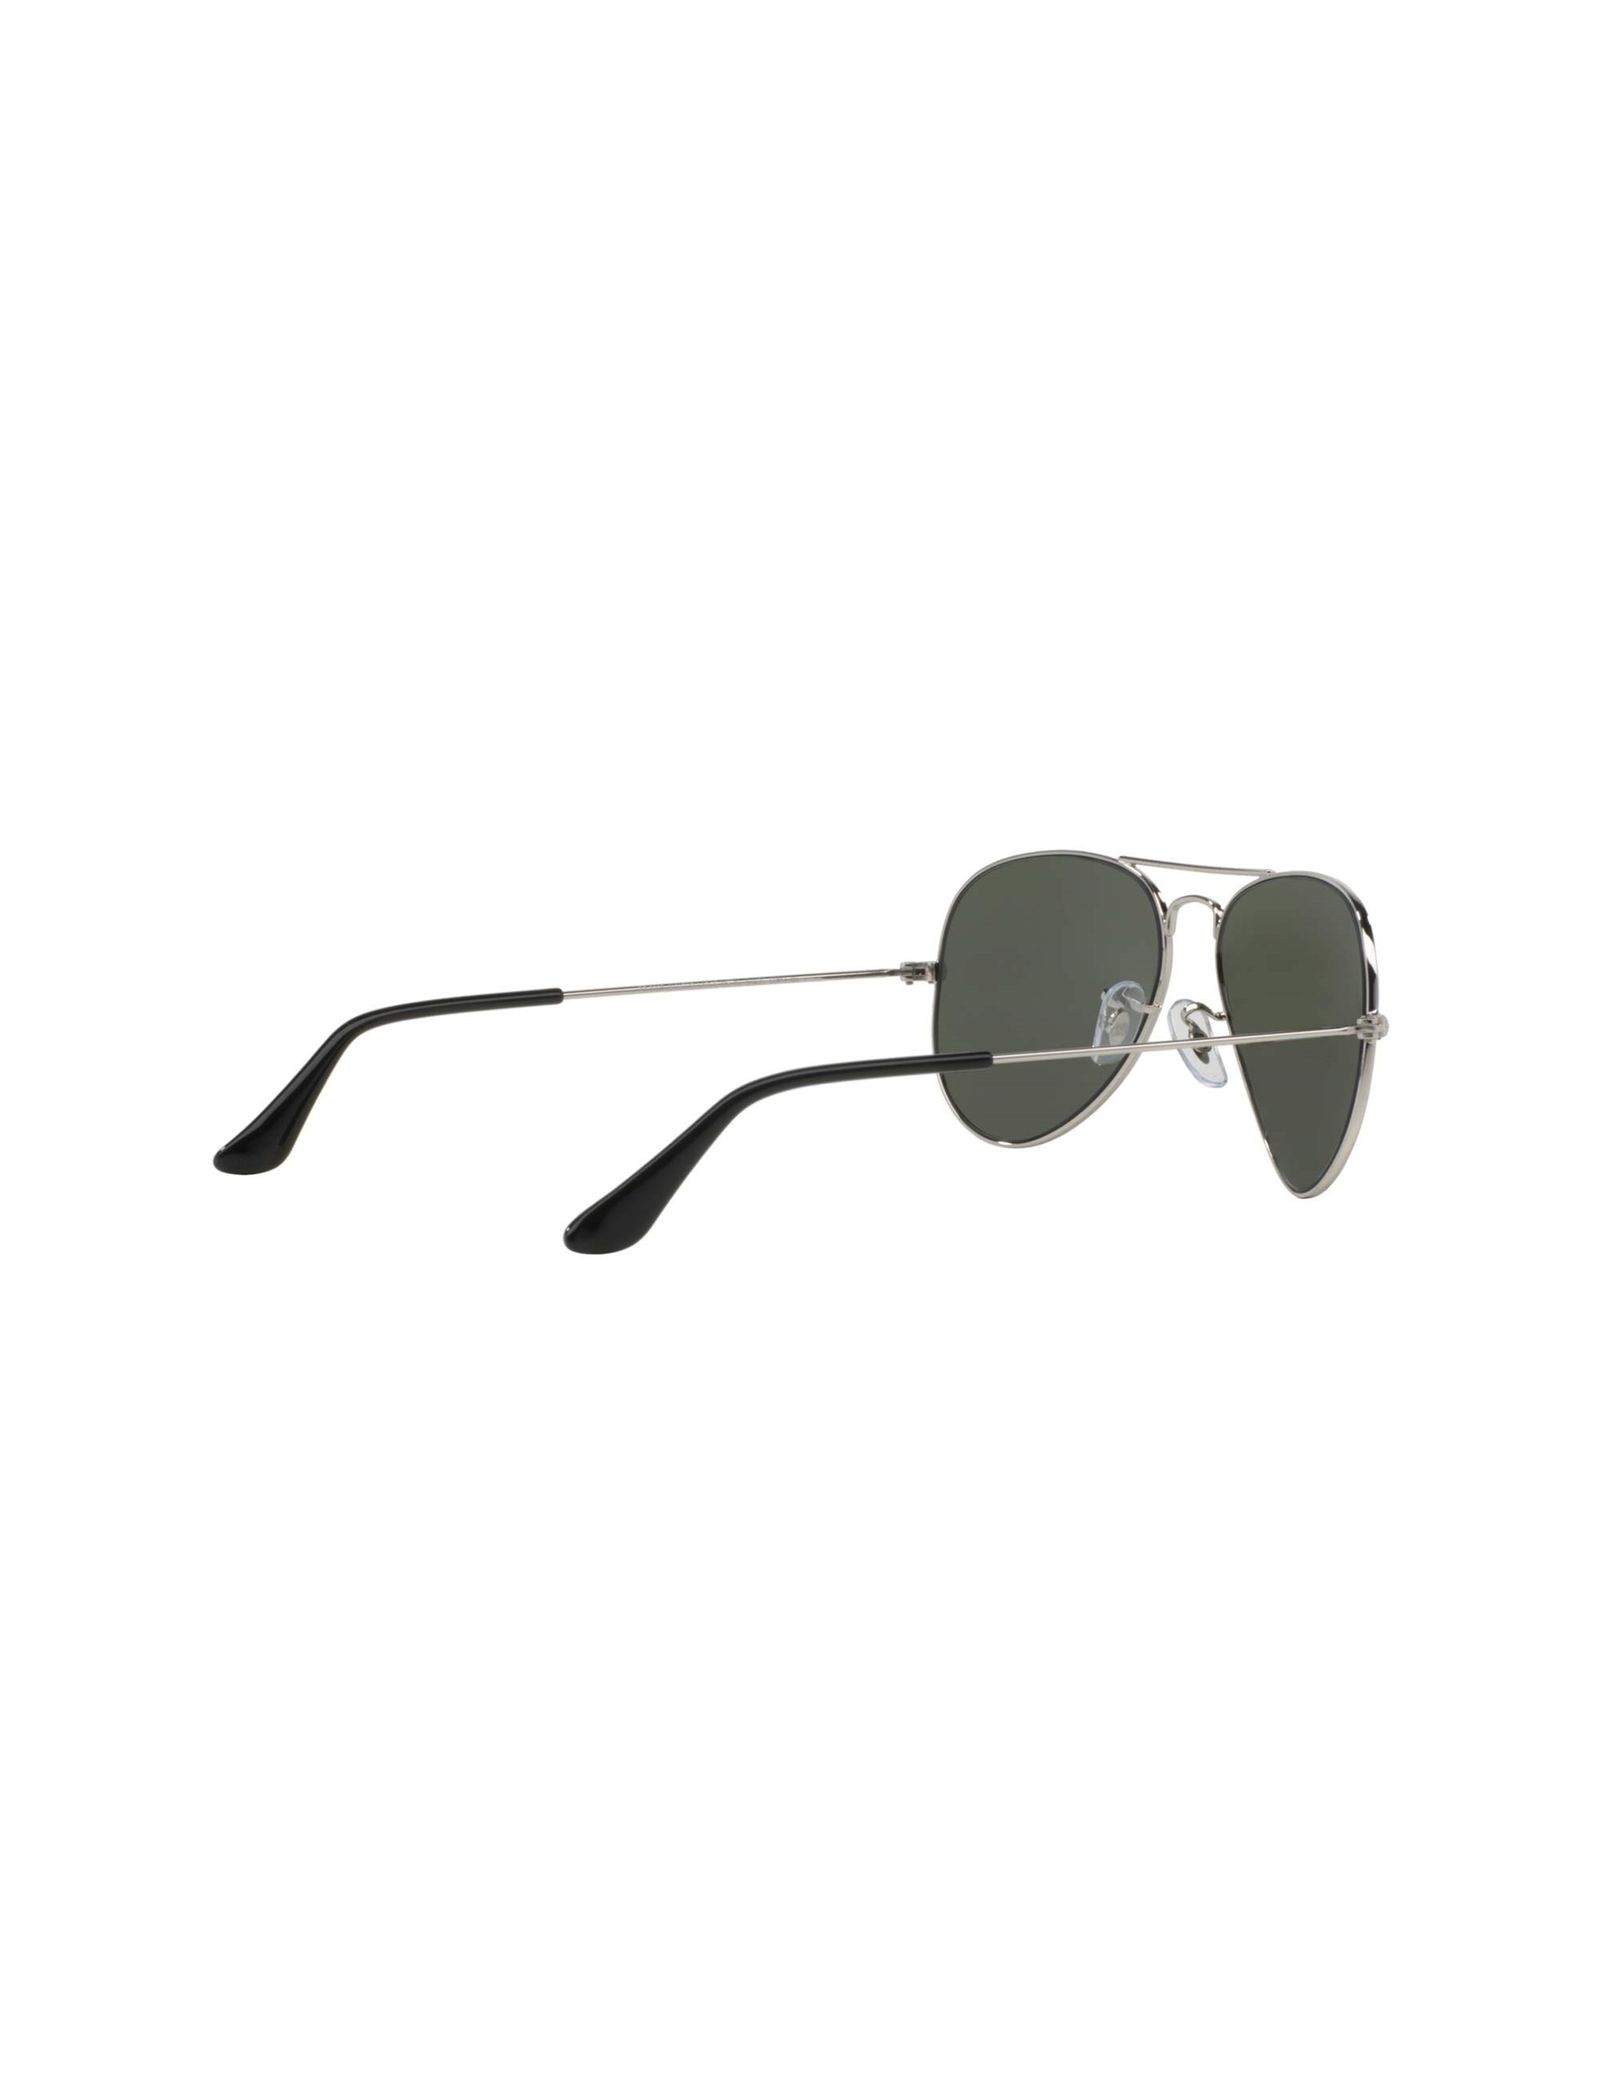 عینک آفتابی خلبانی مردانه - ری بن - نقره اي - 6